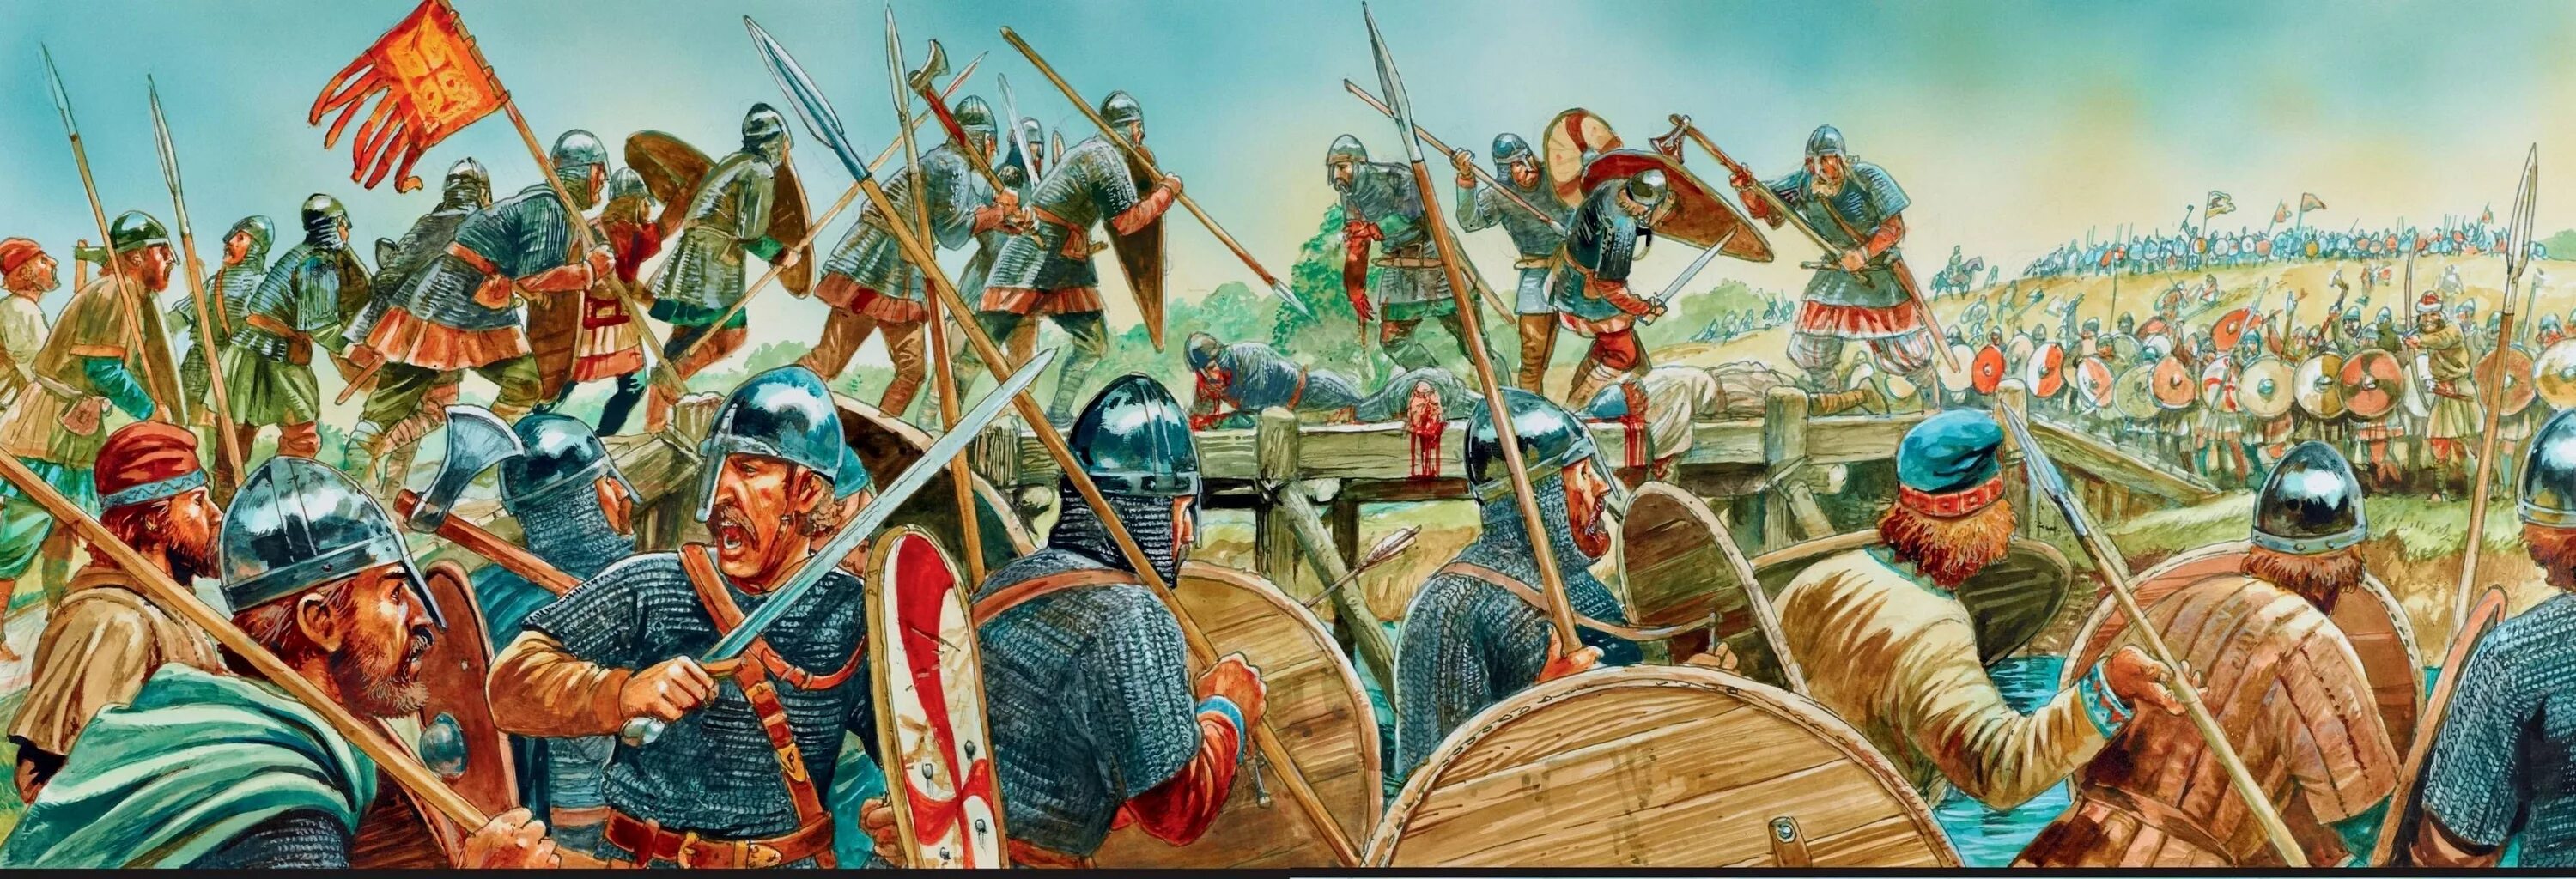 Битва при Стамфорд бридже 1066. Стэмфорд бридж битва. Битва при Стэмфорд-бридж 1066 год. Битва при Стамфорд бридж Викинги. Battle of making